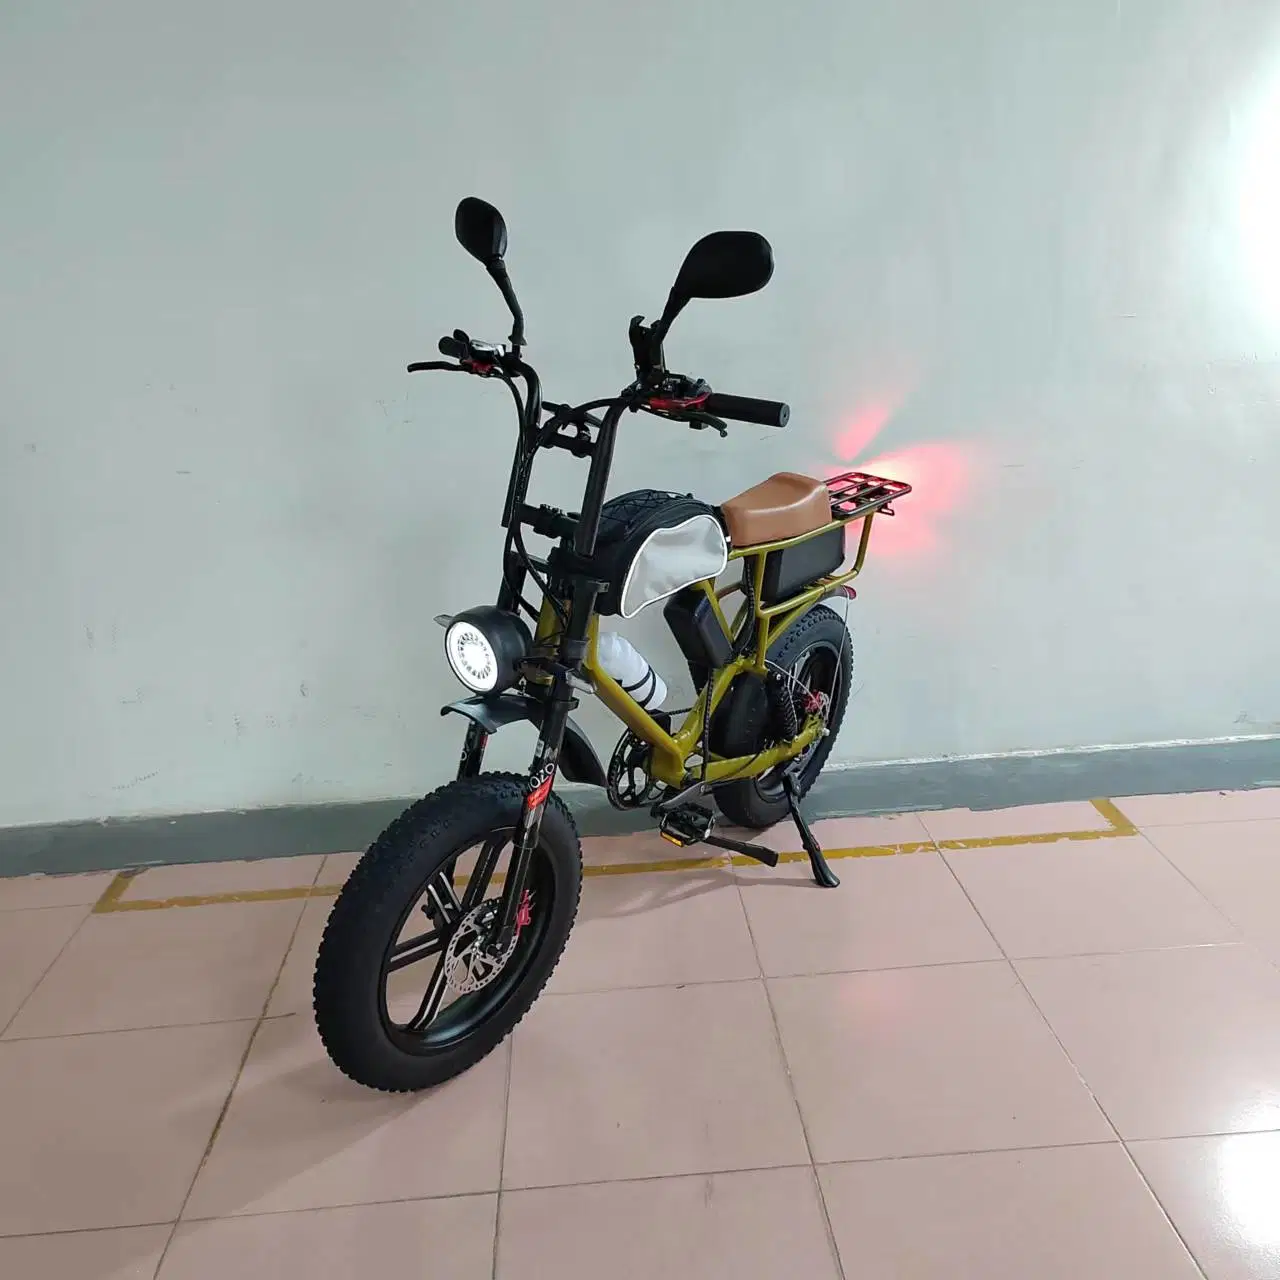 750W Moteur Bafang Vélo électrique de ville Batterie Samsung 52V 22ah